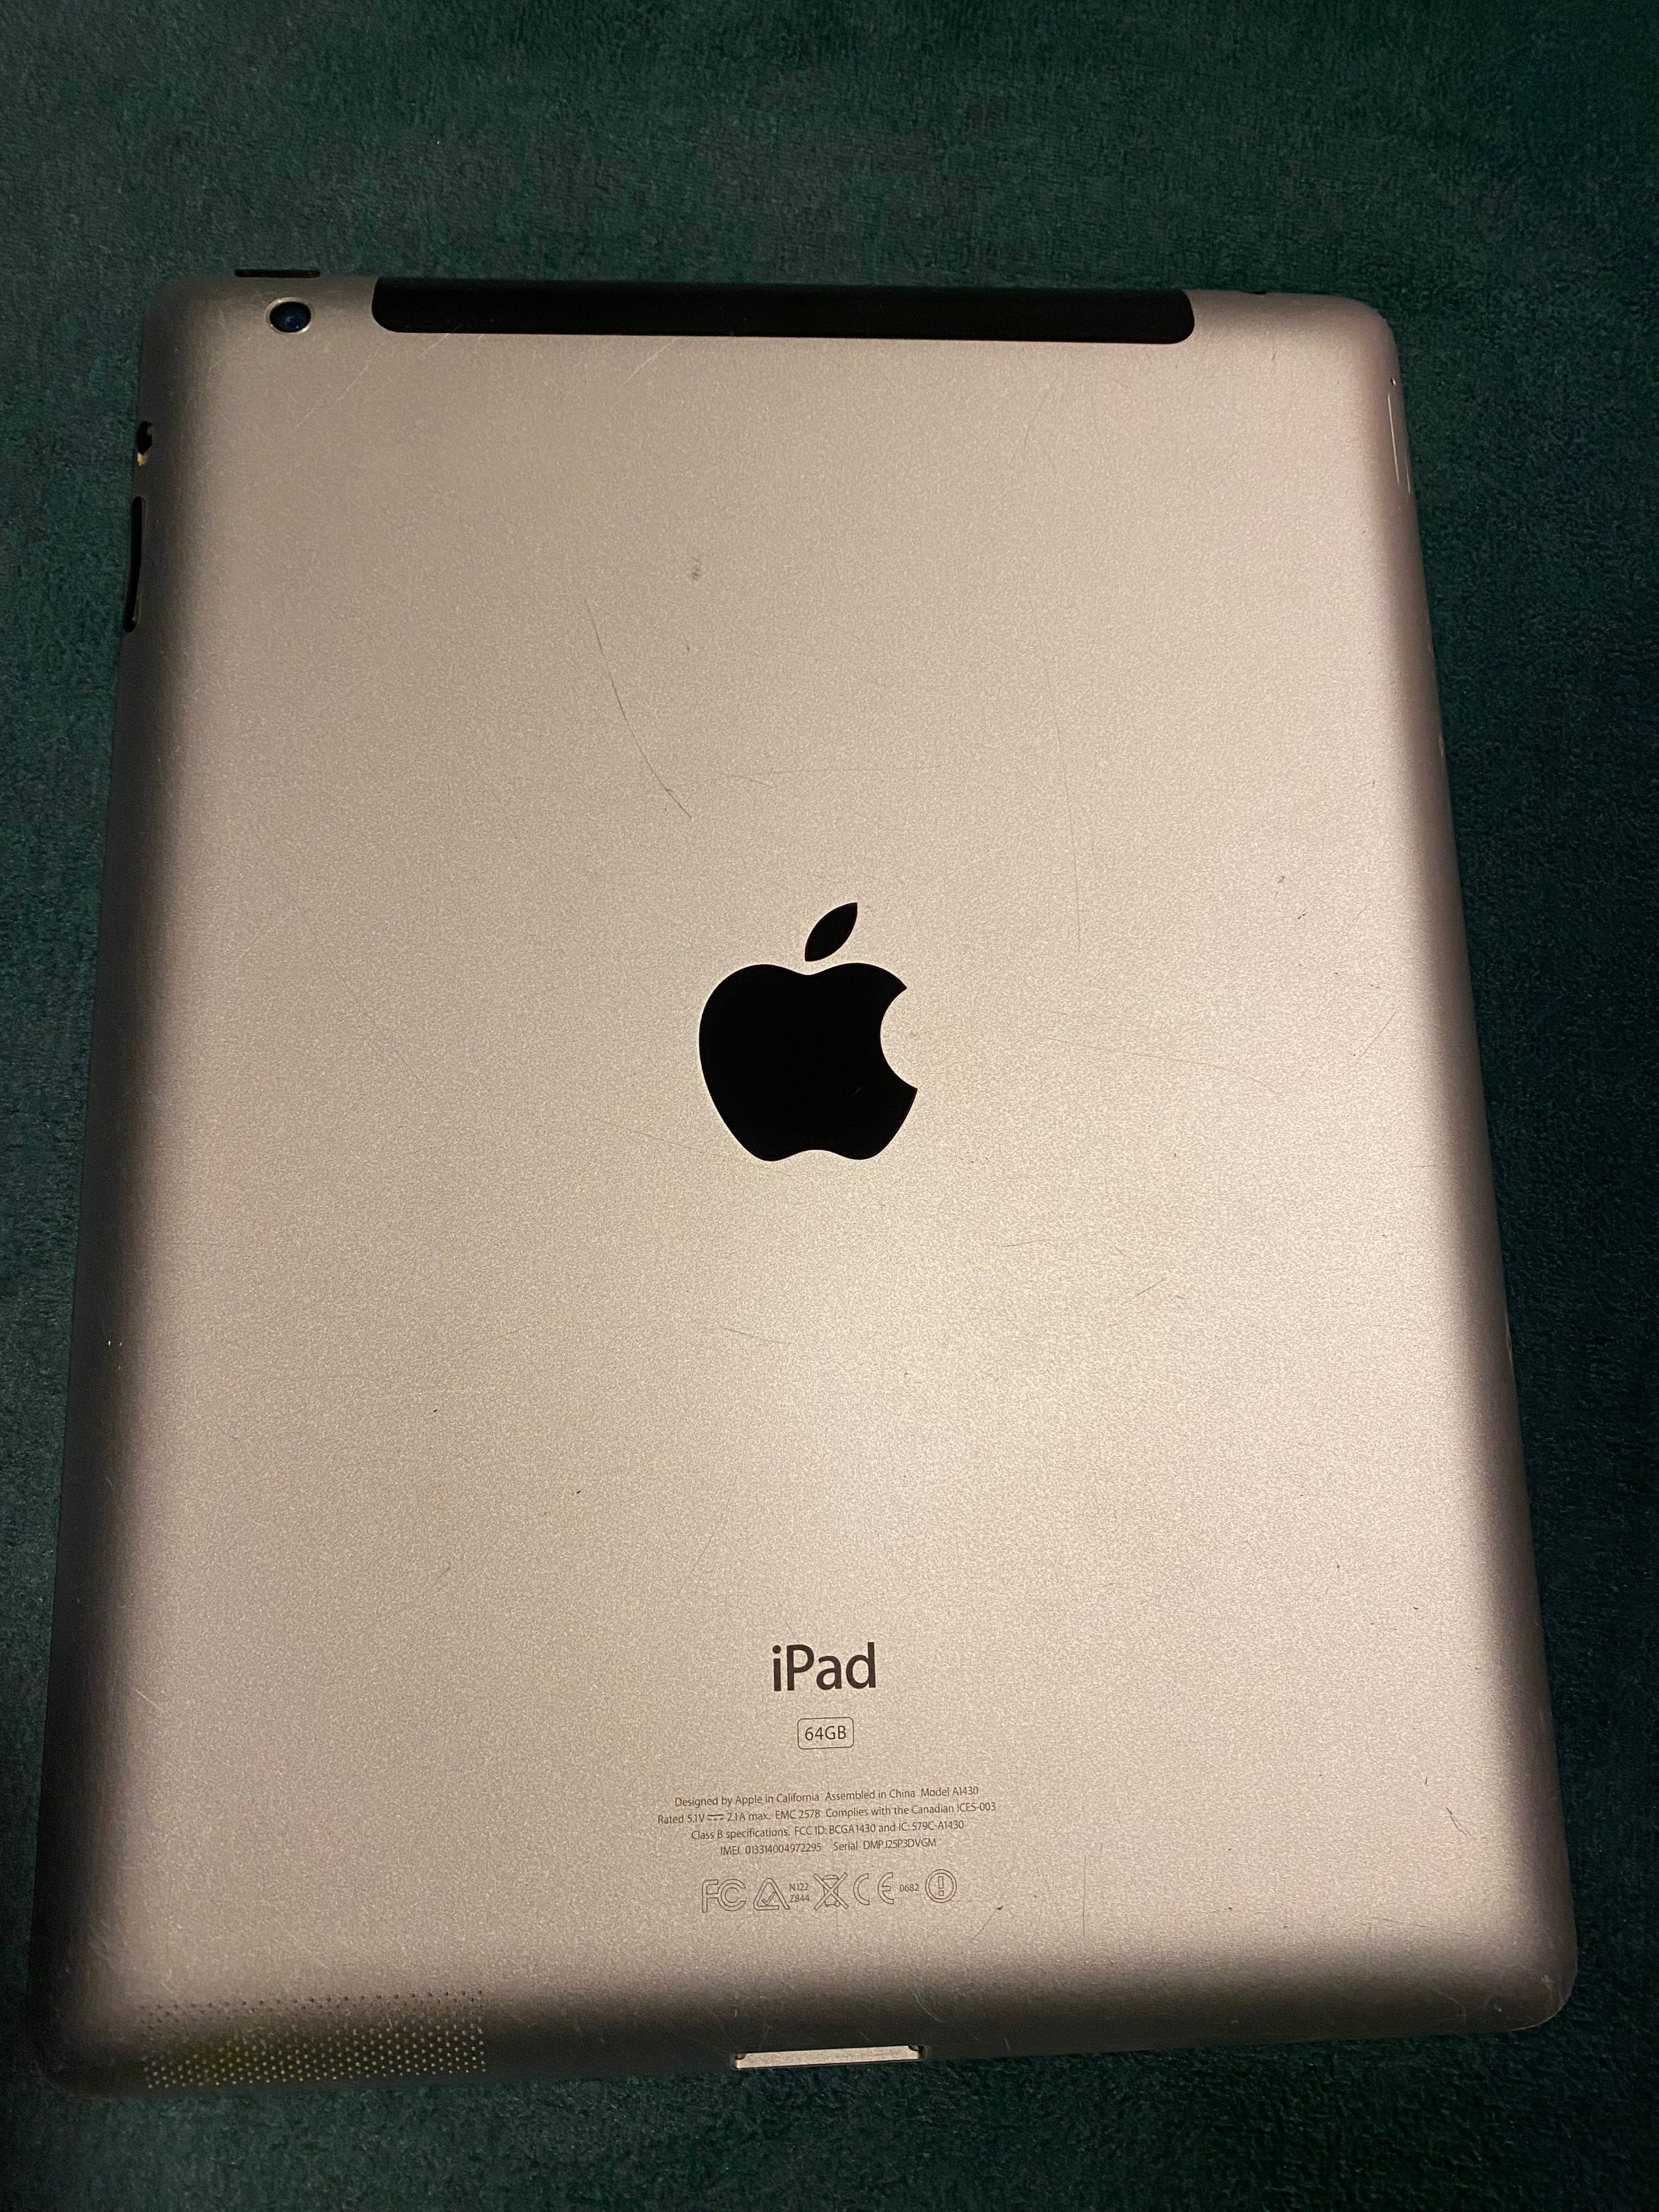 iPad model A1430